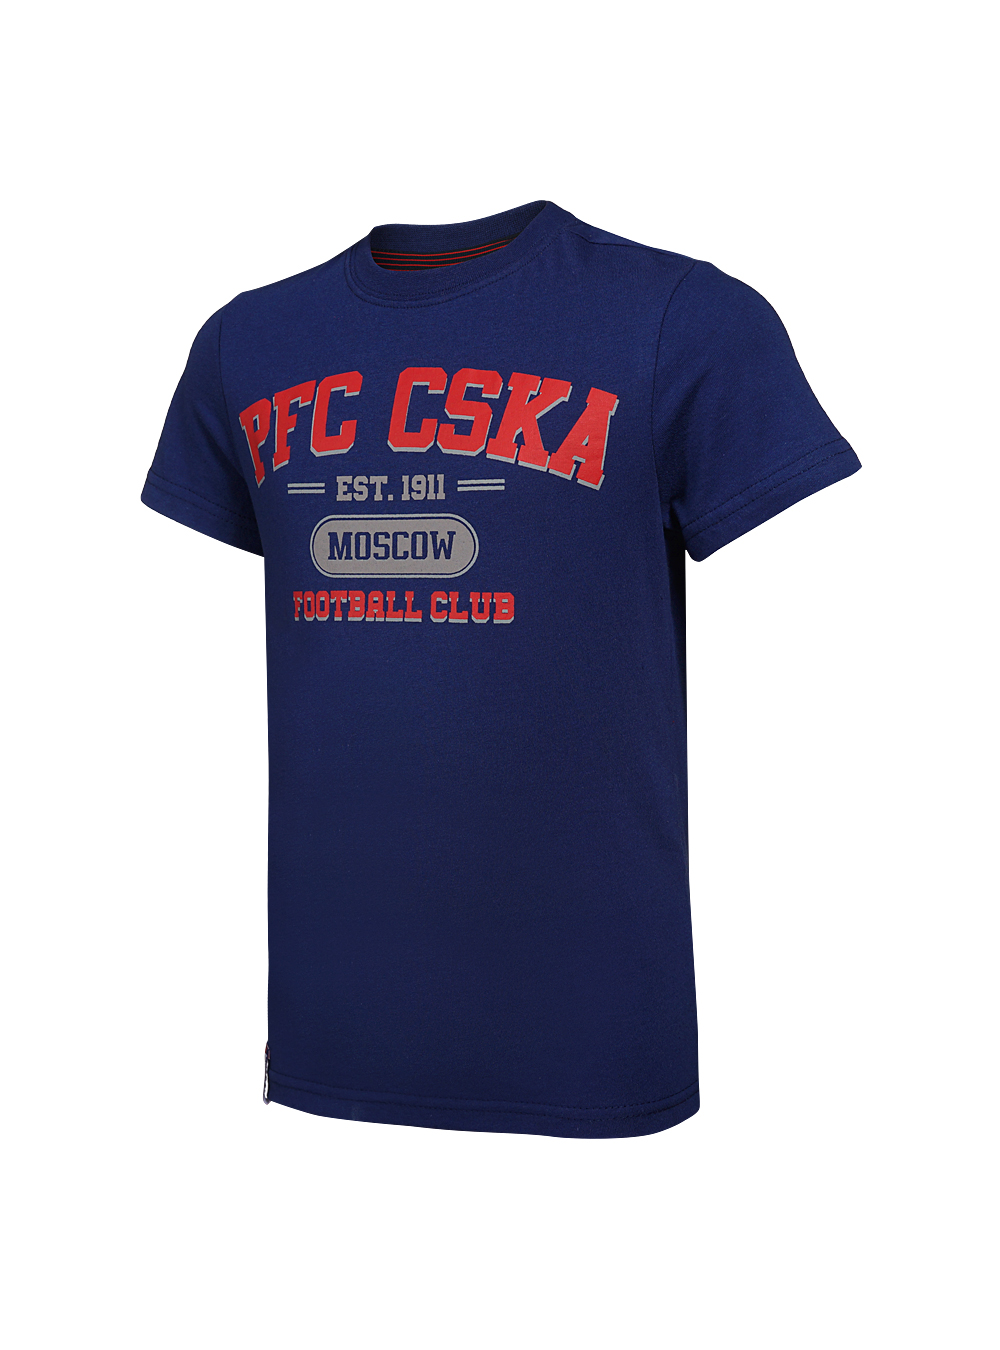 Футболка детская  PFC CSKA Moscow синяя (146) ПФК ЦСКА CSK18031 - фото 1